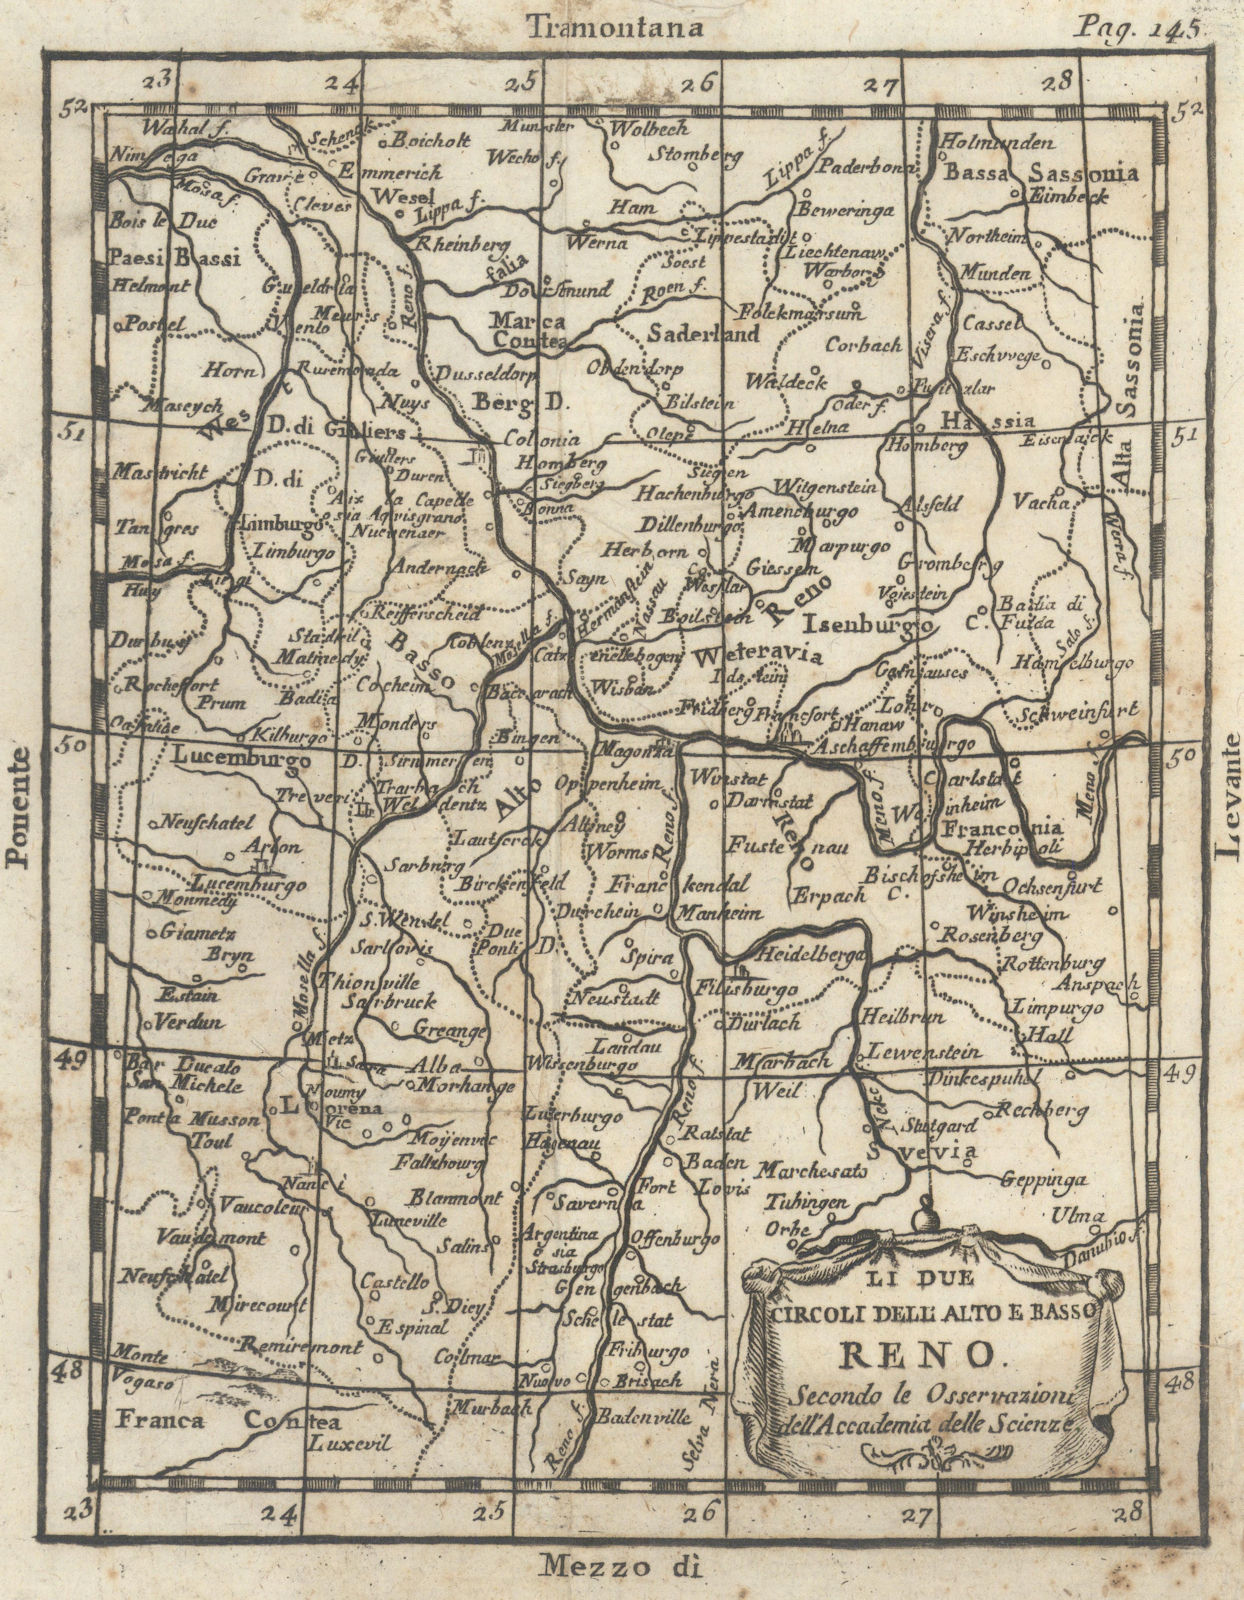 'Li due Circoli Dell' Alto e Basso Reno'. Rhine valley. BUFFIER 1788 old map